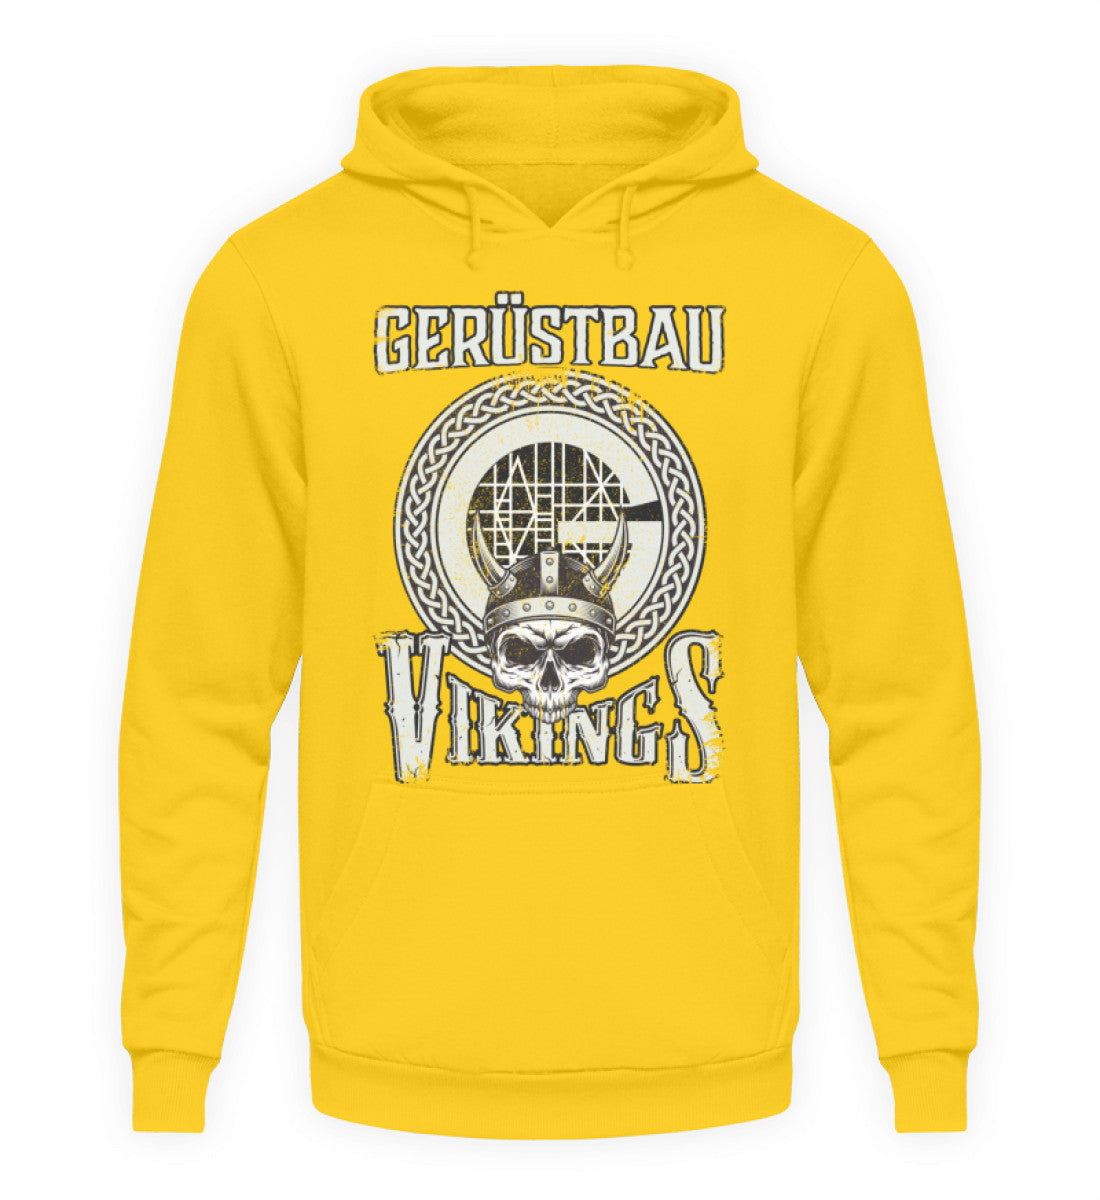 Gerüstbau Vikings - Hoodie €34.95 Gerüstbauer - Shop >>